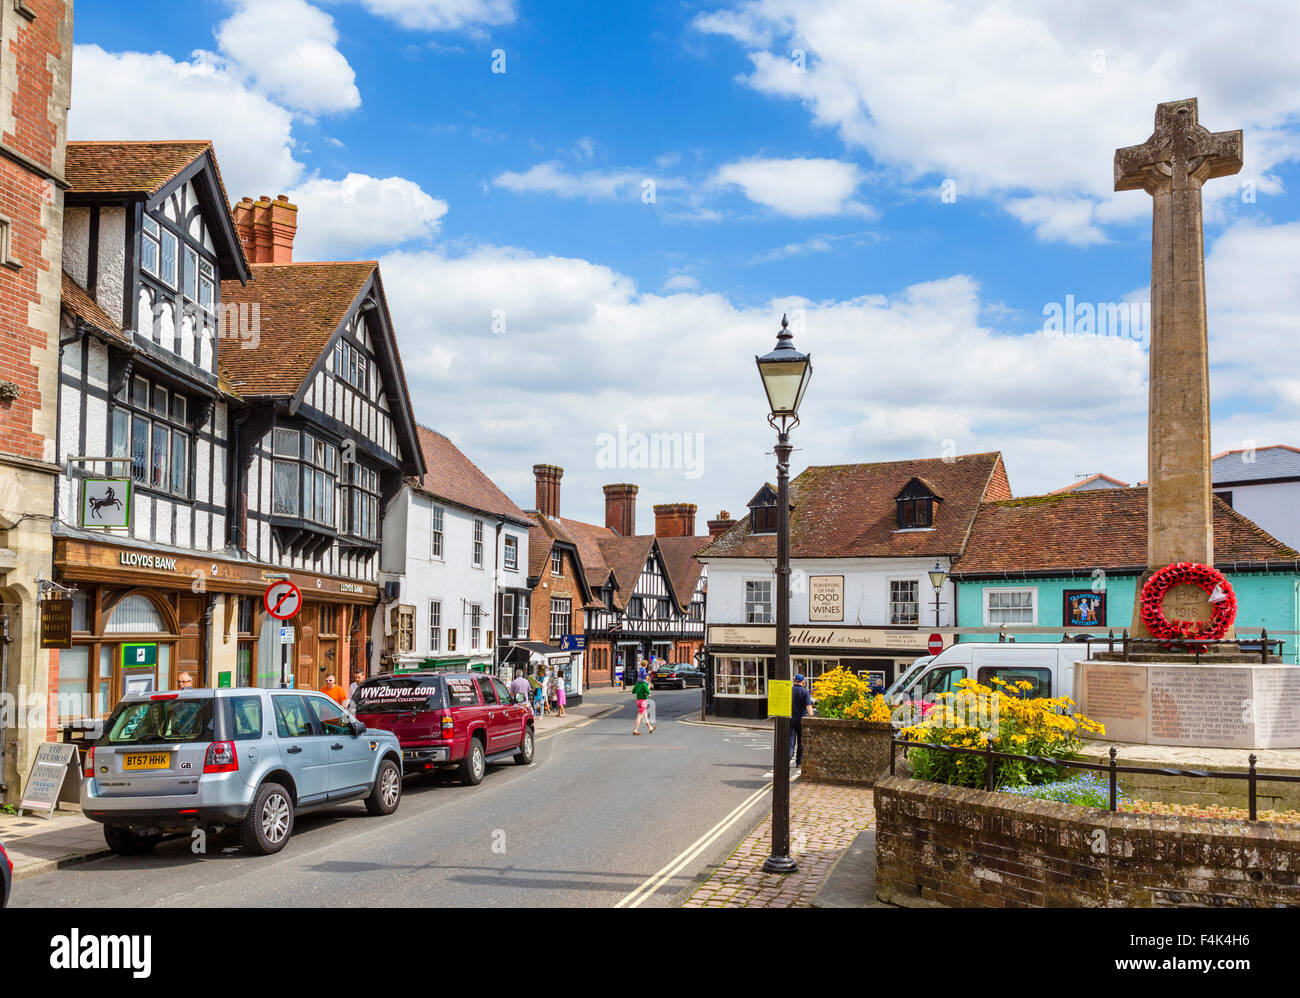 High Street en el centro de la ciudad, Arundel, West Sussex, Inglaterra, Reino Unido. Foto de stock